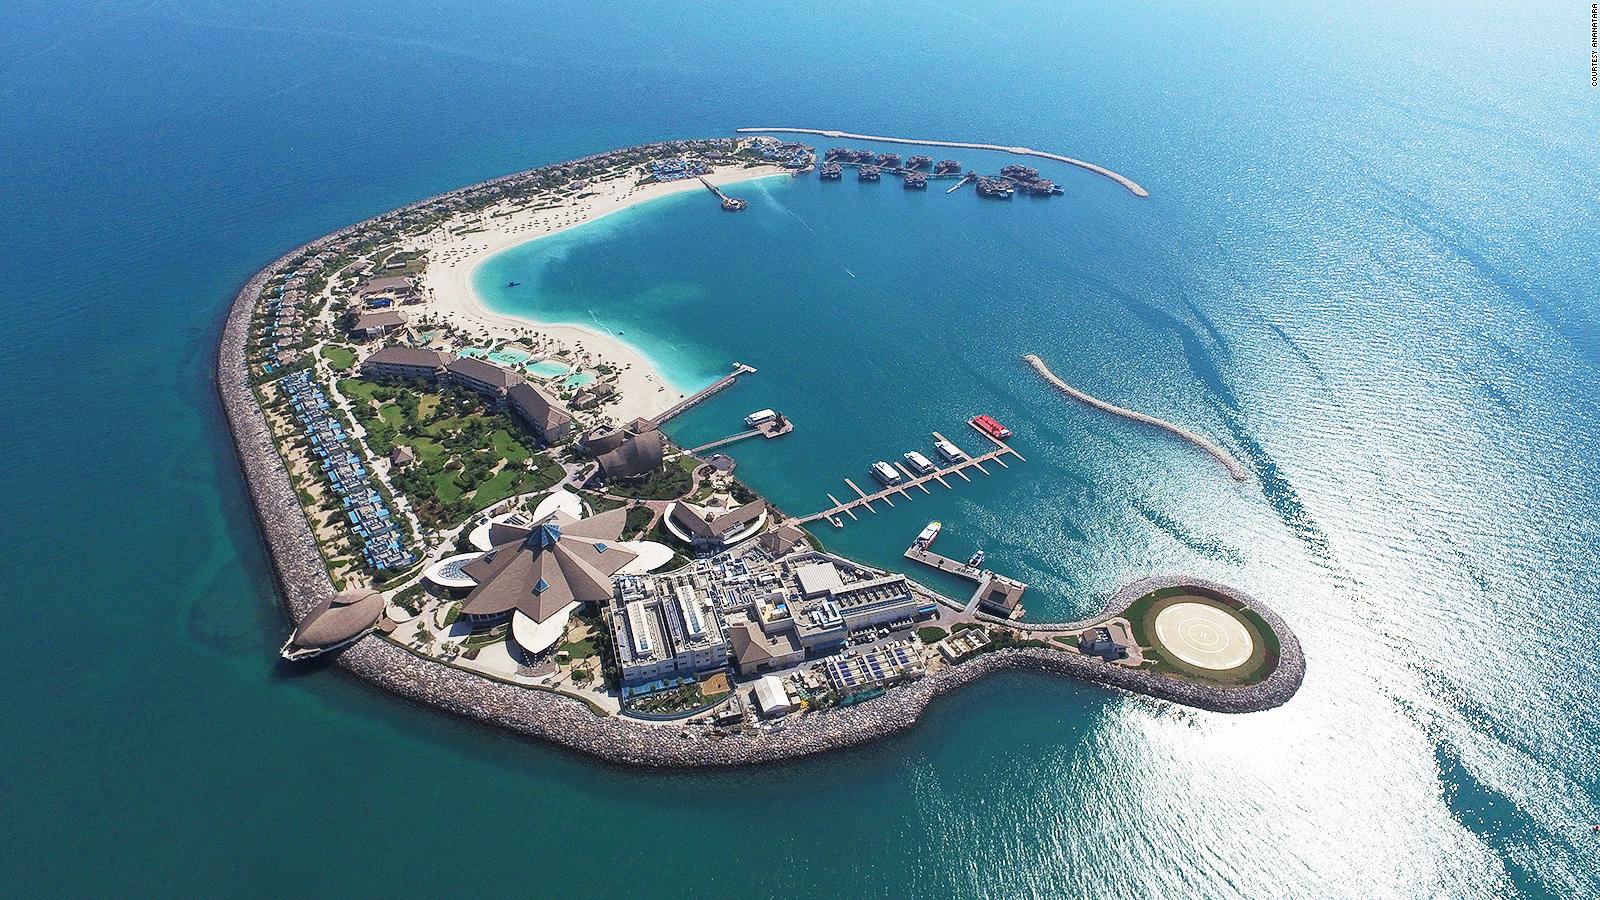 Banana Island: Luxury resort off Doha coast of Qatar | CNN Travel